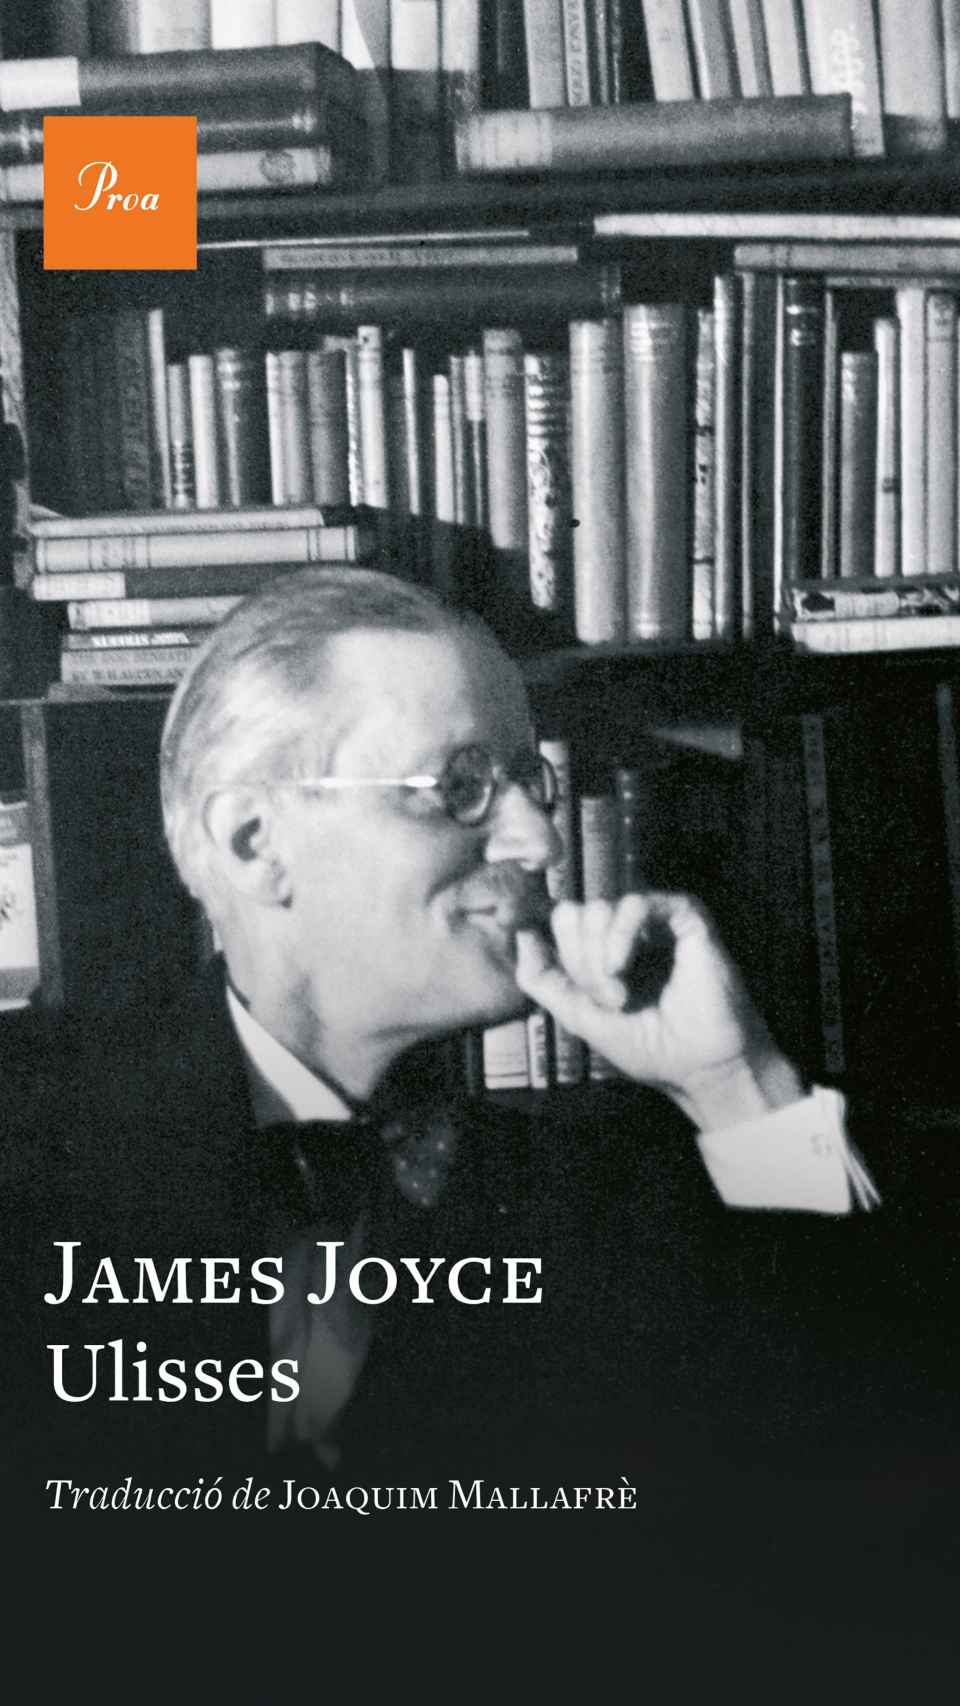 La portada en Proa de la traducción del 'Ulisses' de Joyce por Mallafré